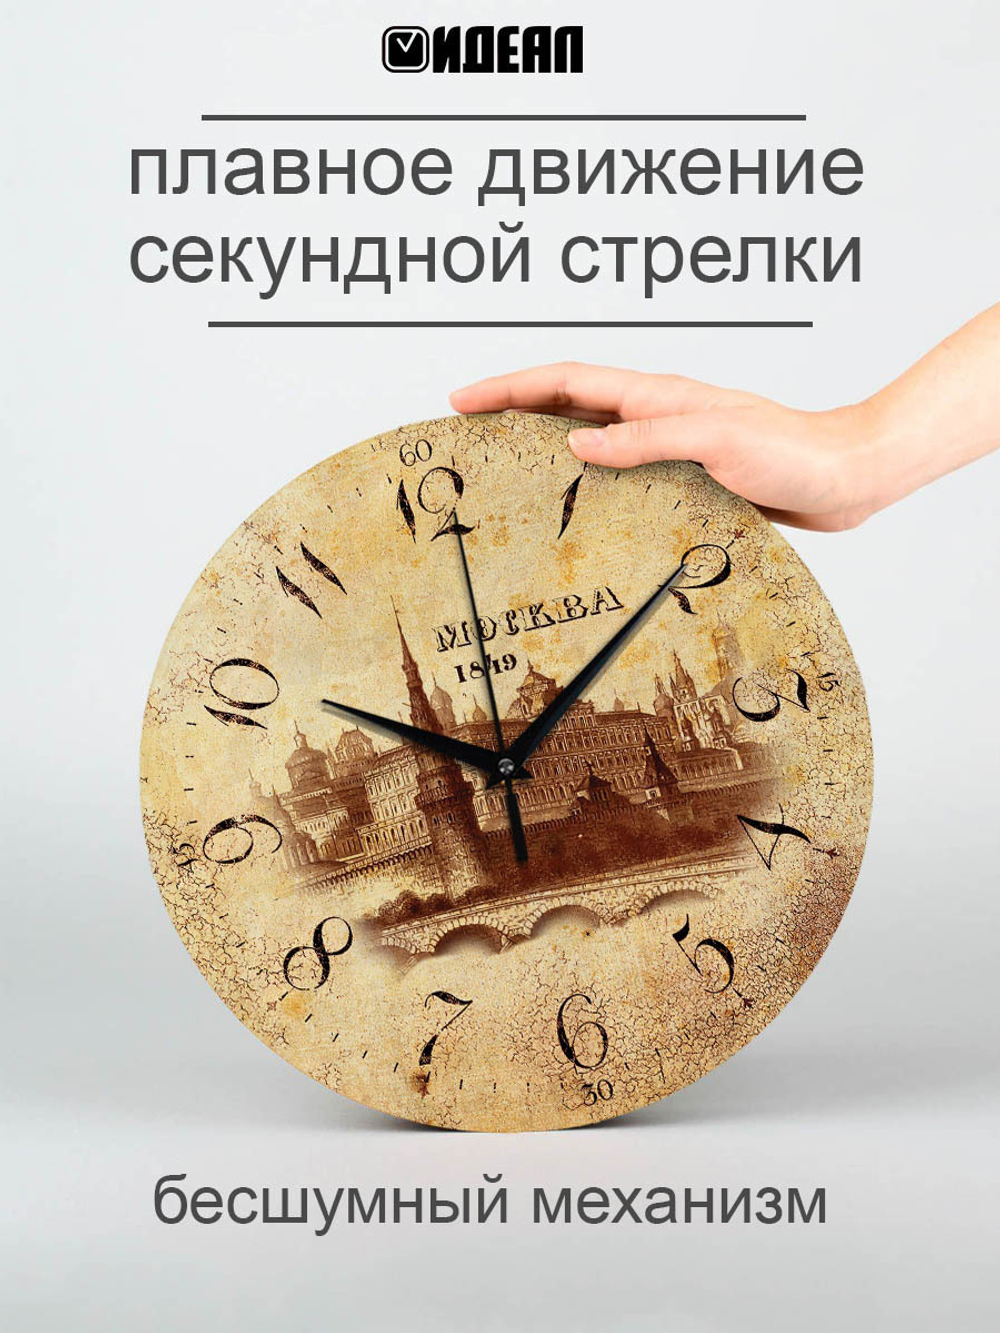 Часы настенные деревянные IDEAL "Москва ретро", 30 см, бесшумные